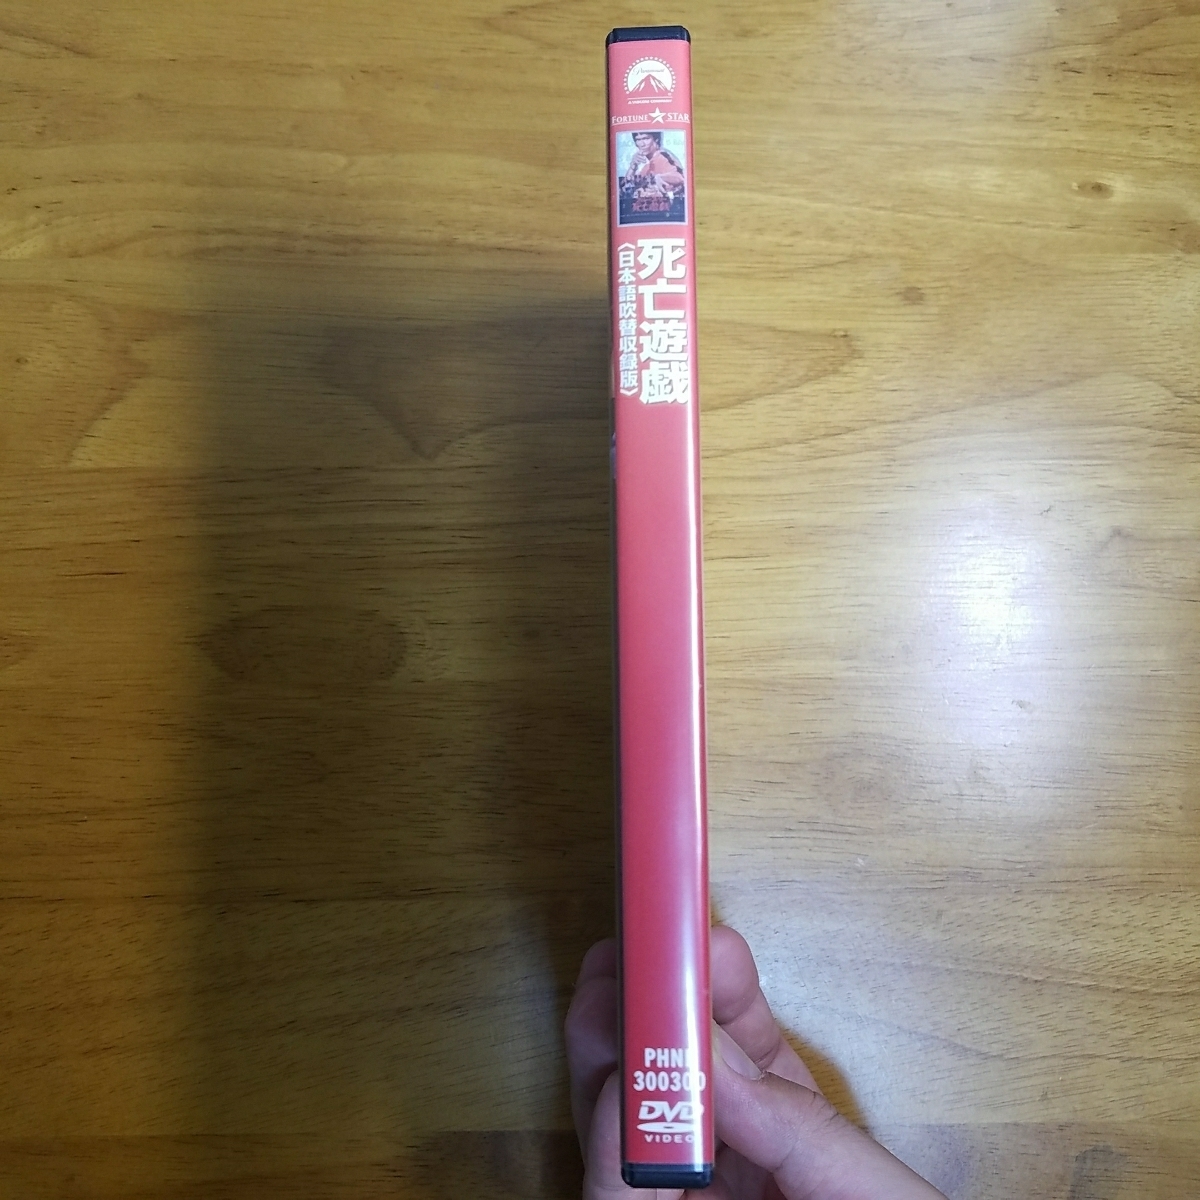 《死亡游戏》:DVD1枚组み:[日本语吹替収录版